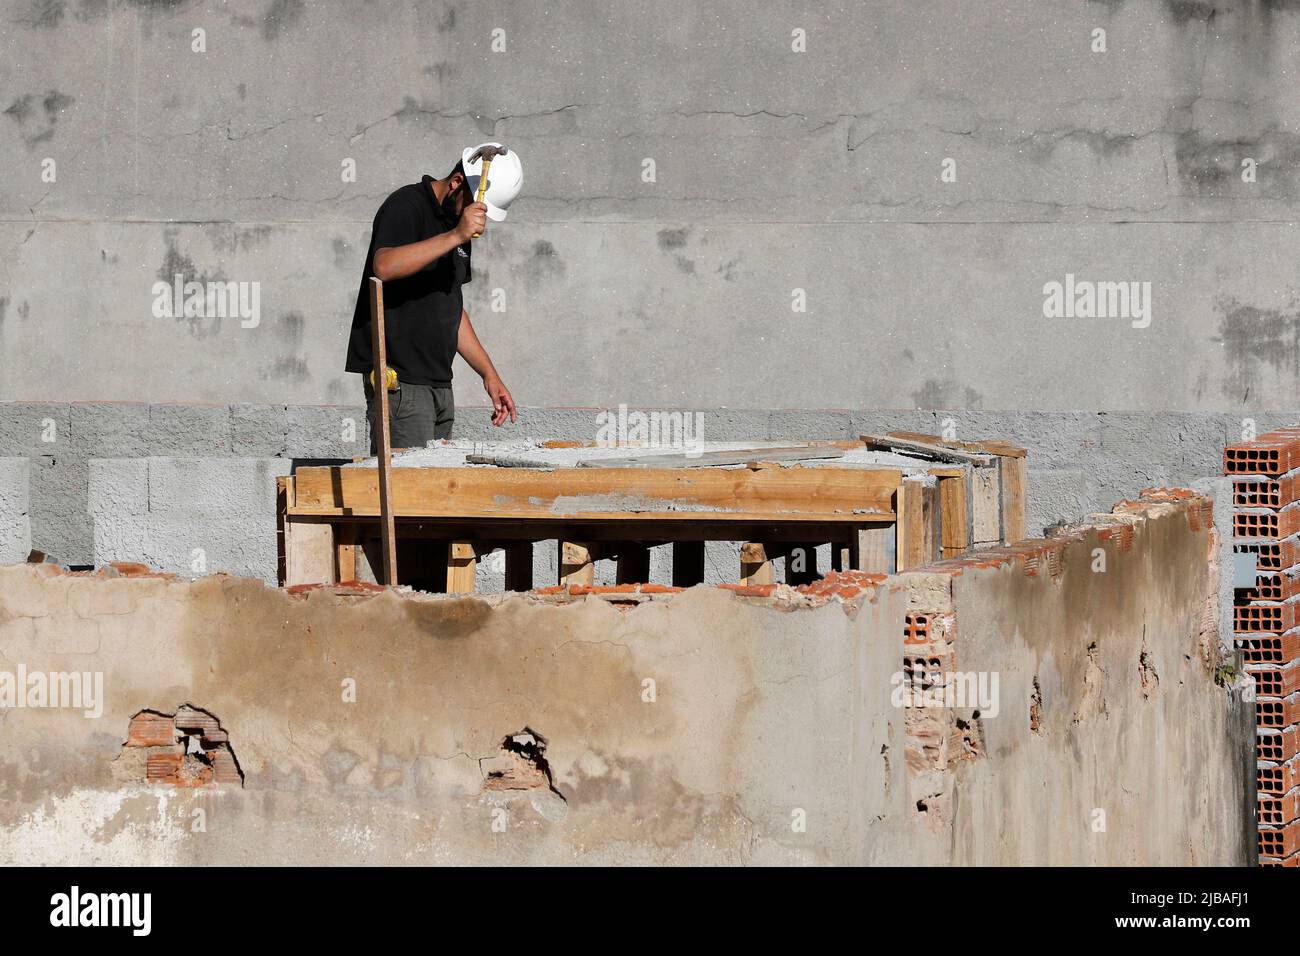 Zimmermann, Bauarbeiter. Arbeiter renovieren Dach des Gebäudes. Hausreparatur im Bau. Mann bei der Arbeit auf dem Dach Stockfoto